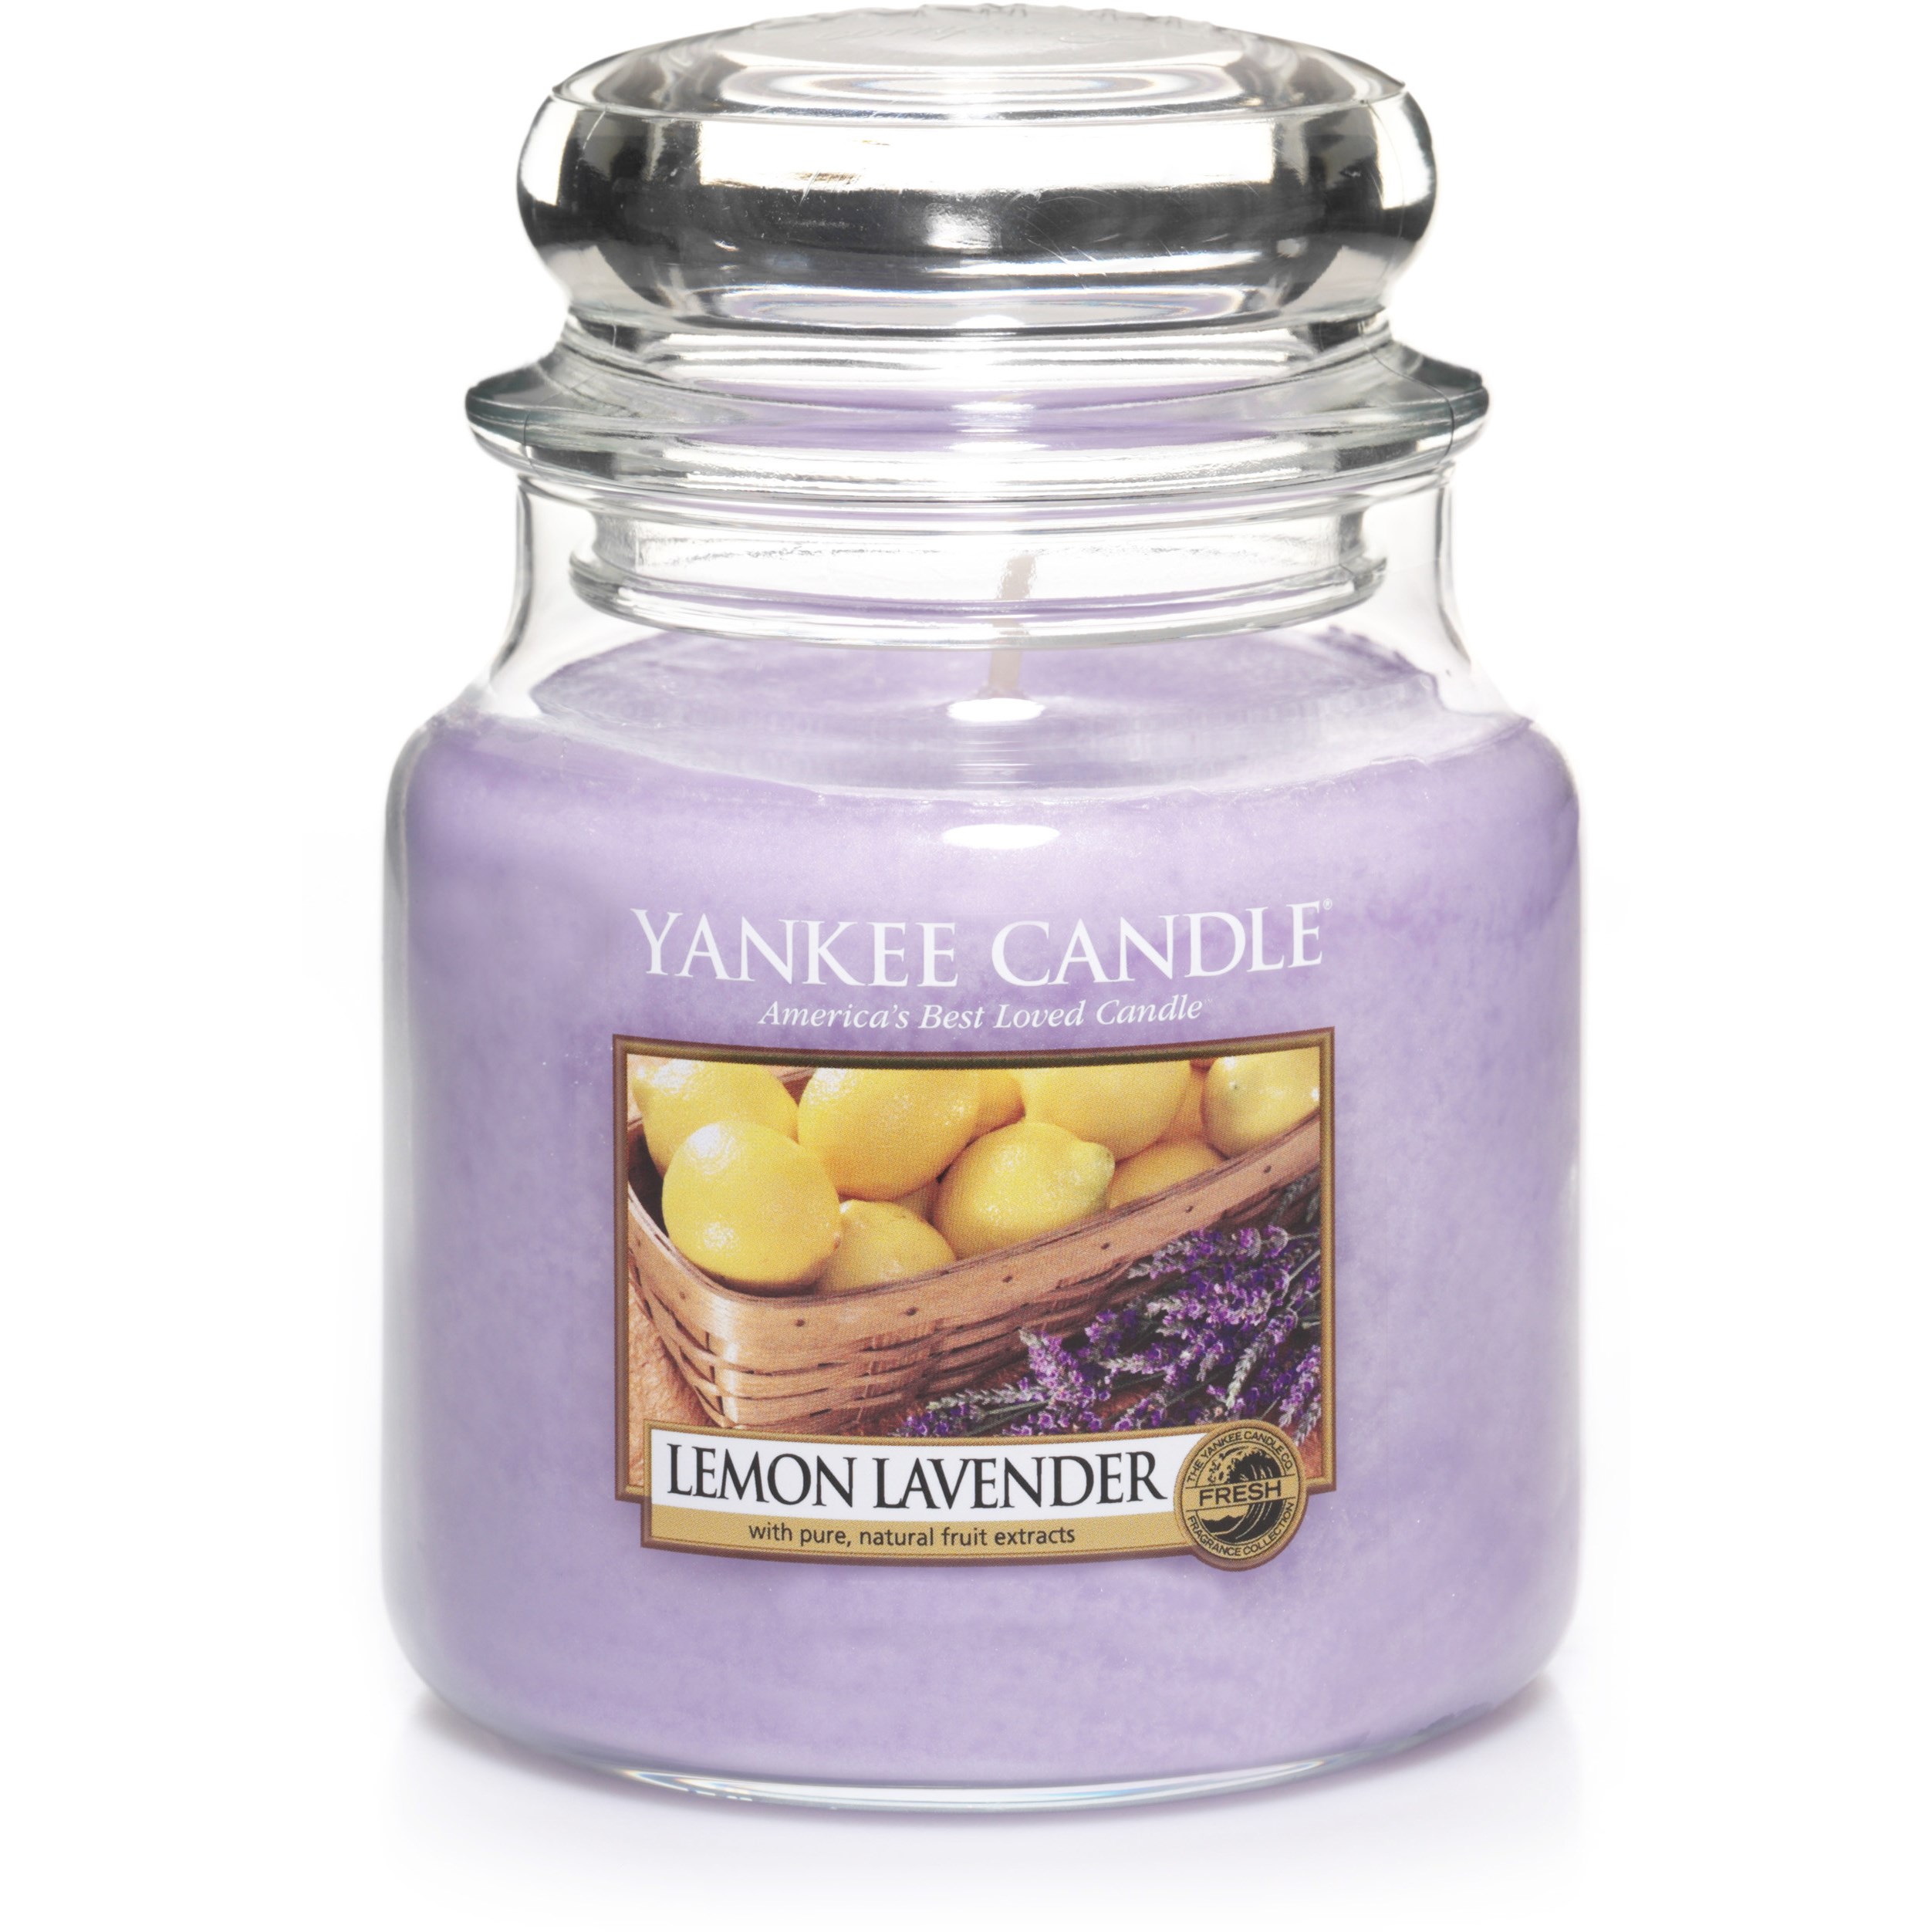 Yankee Candle Lemon Lavender Medium Jar